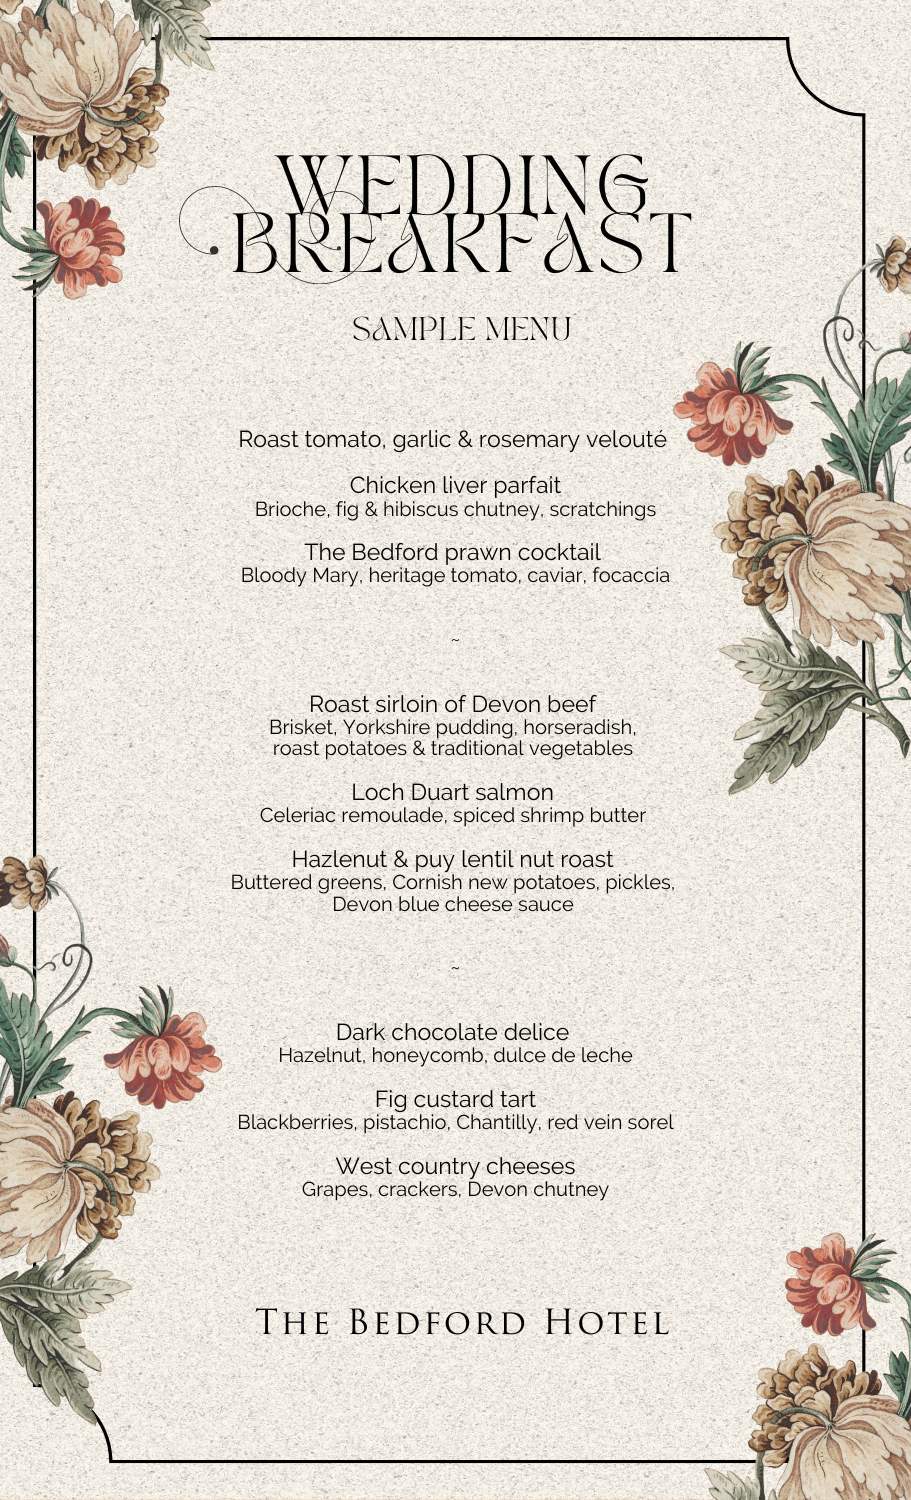 Sample wedding breakfast menu